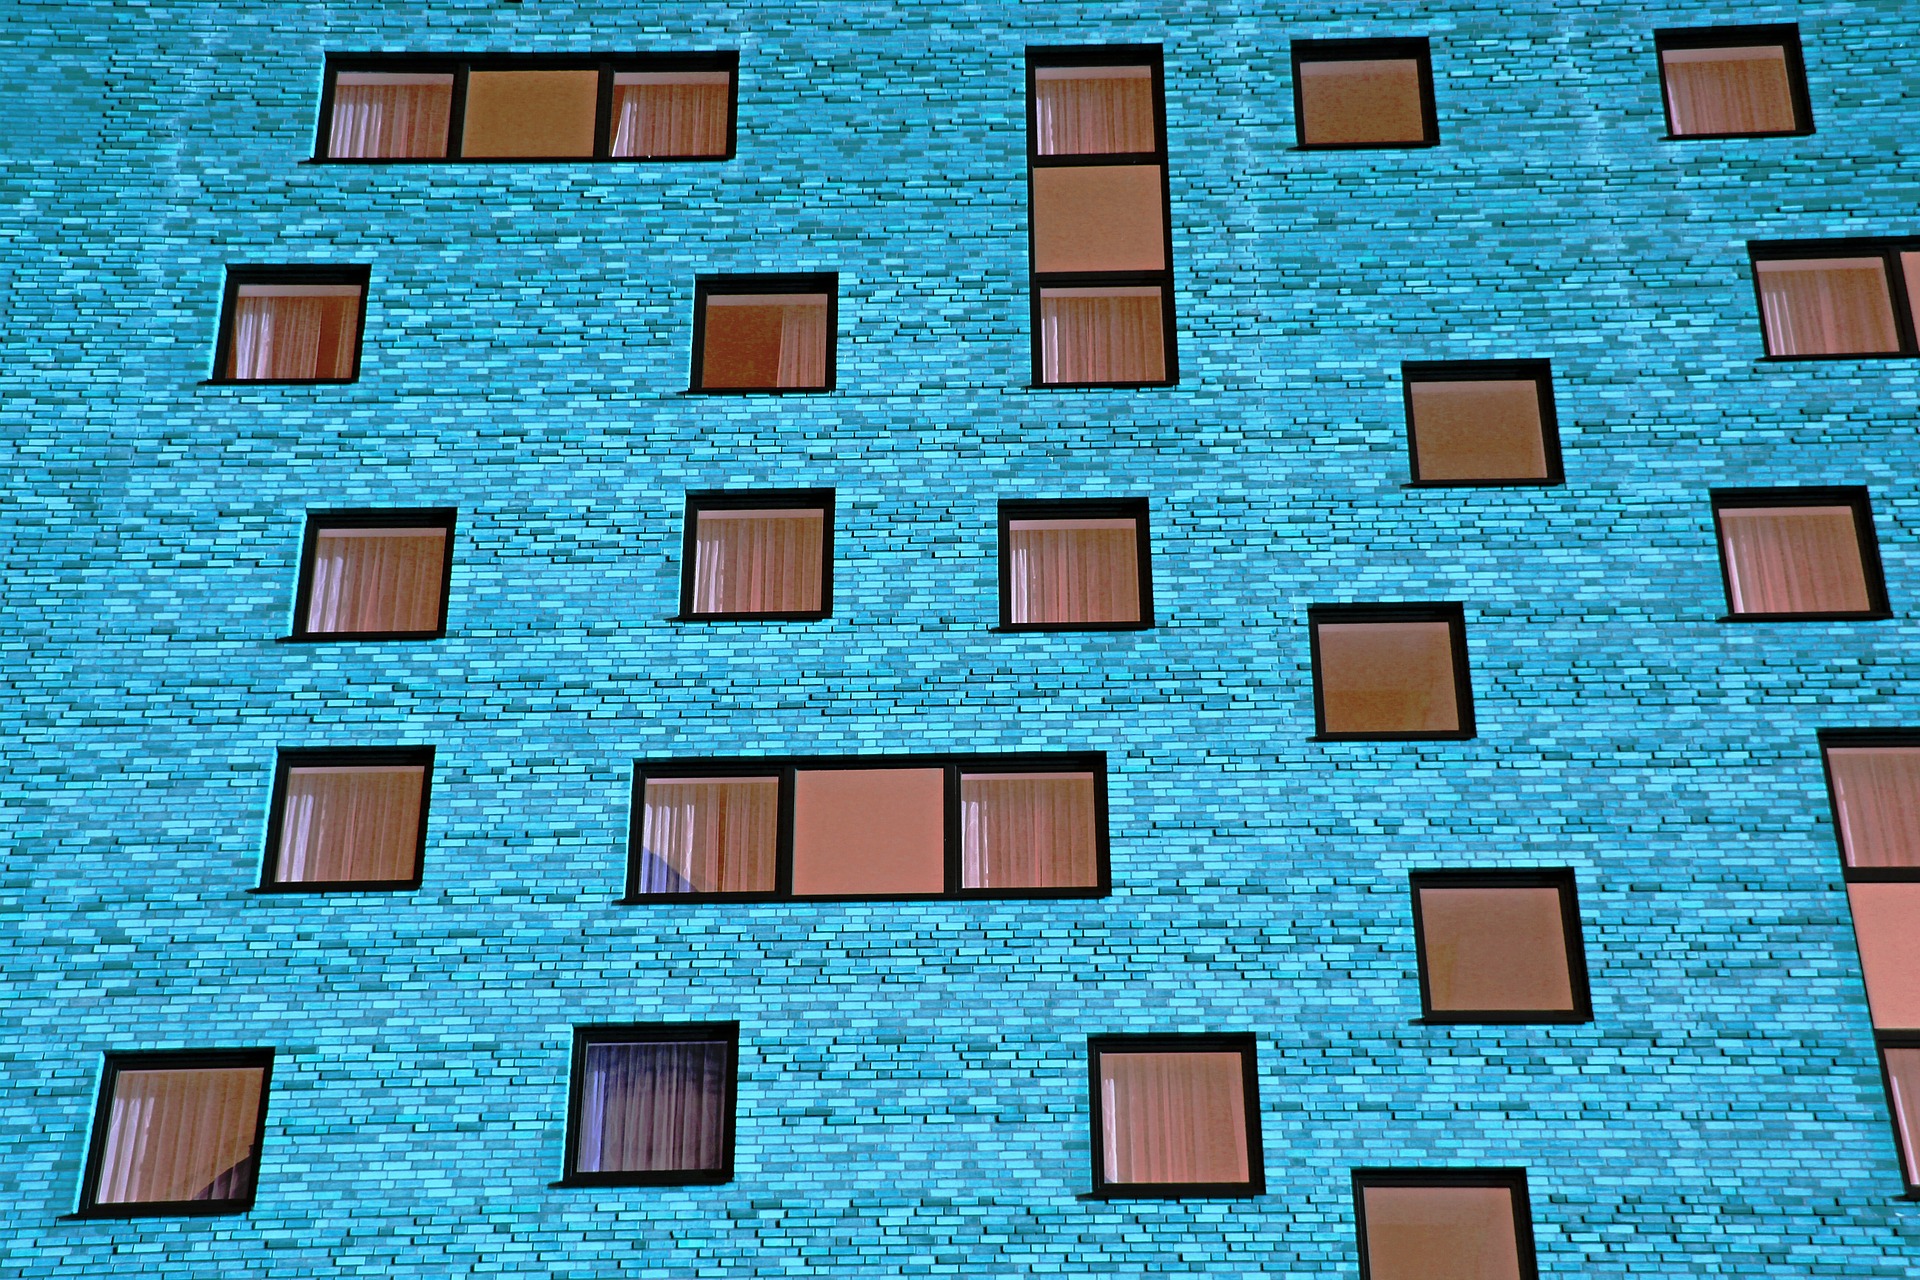 moderný modrý panelák s hnedými oknami